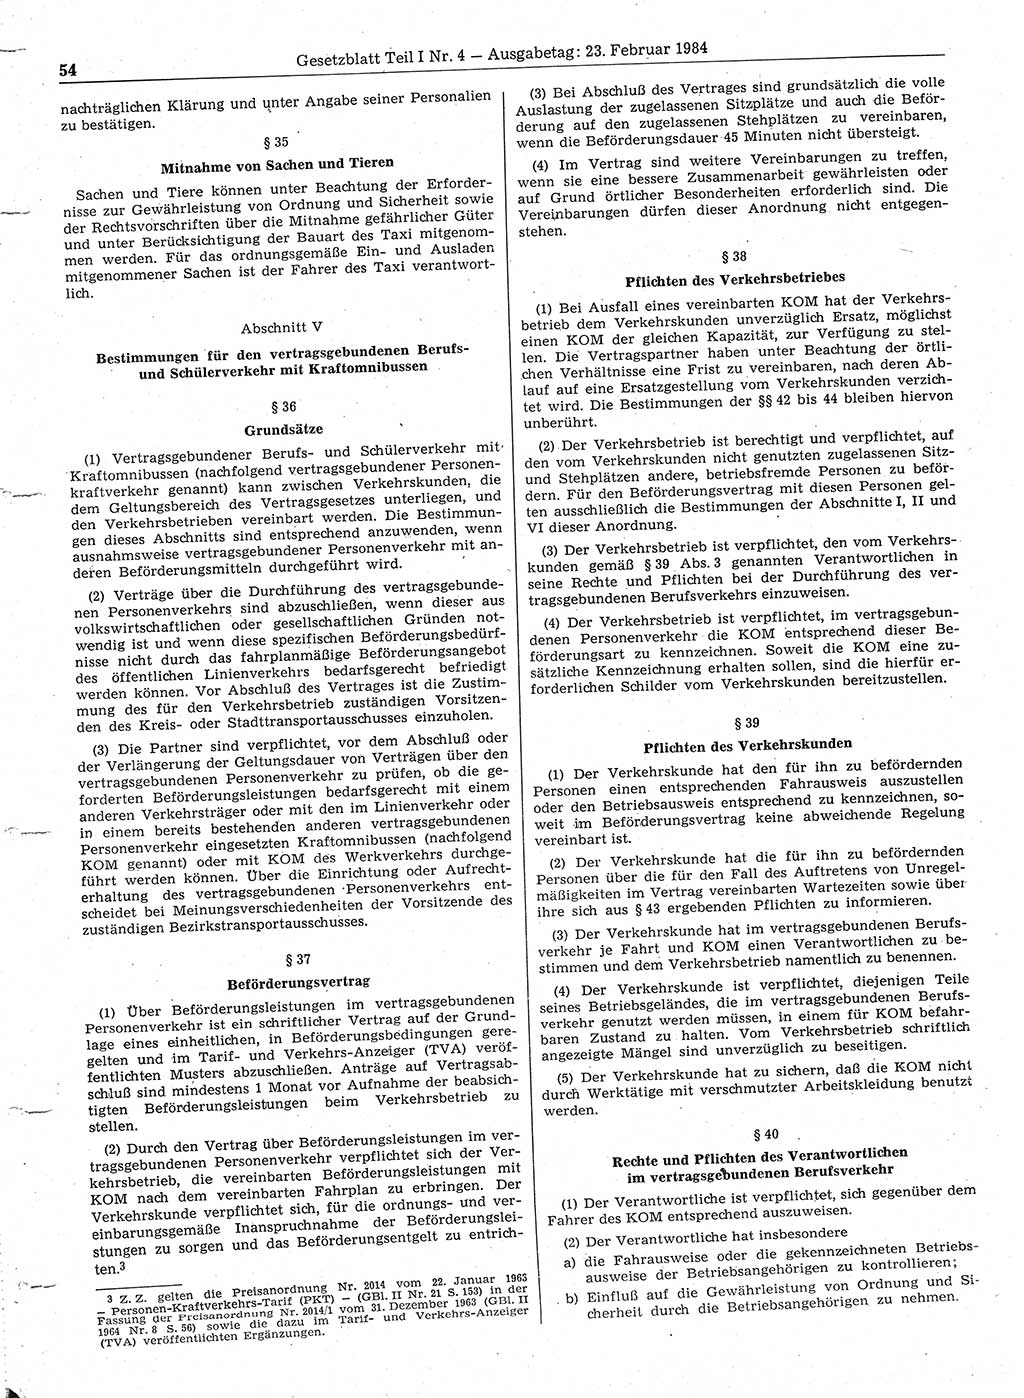 Gesetzblatt (GBl.) der Deutschen Demokratischen Republik (DDR) Teil Ⅰ 1984, Seite 54 (GBl. DDR Ⅰ 1984, S. 54)